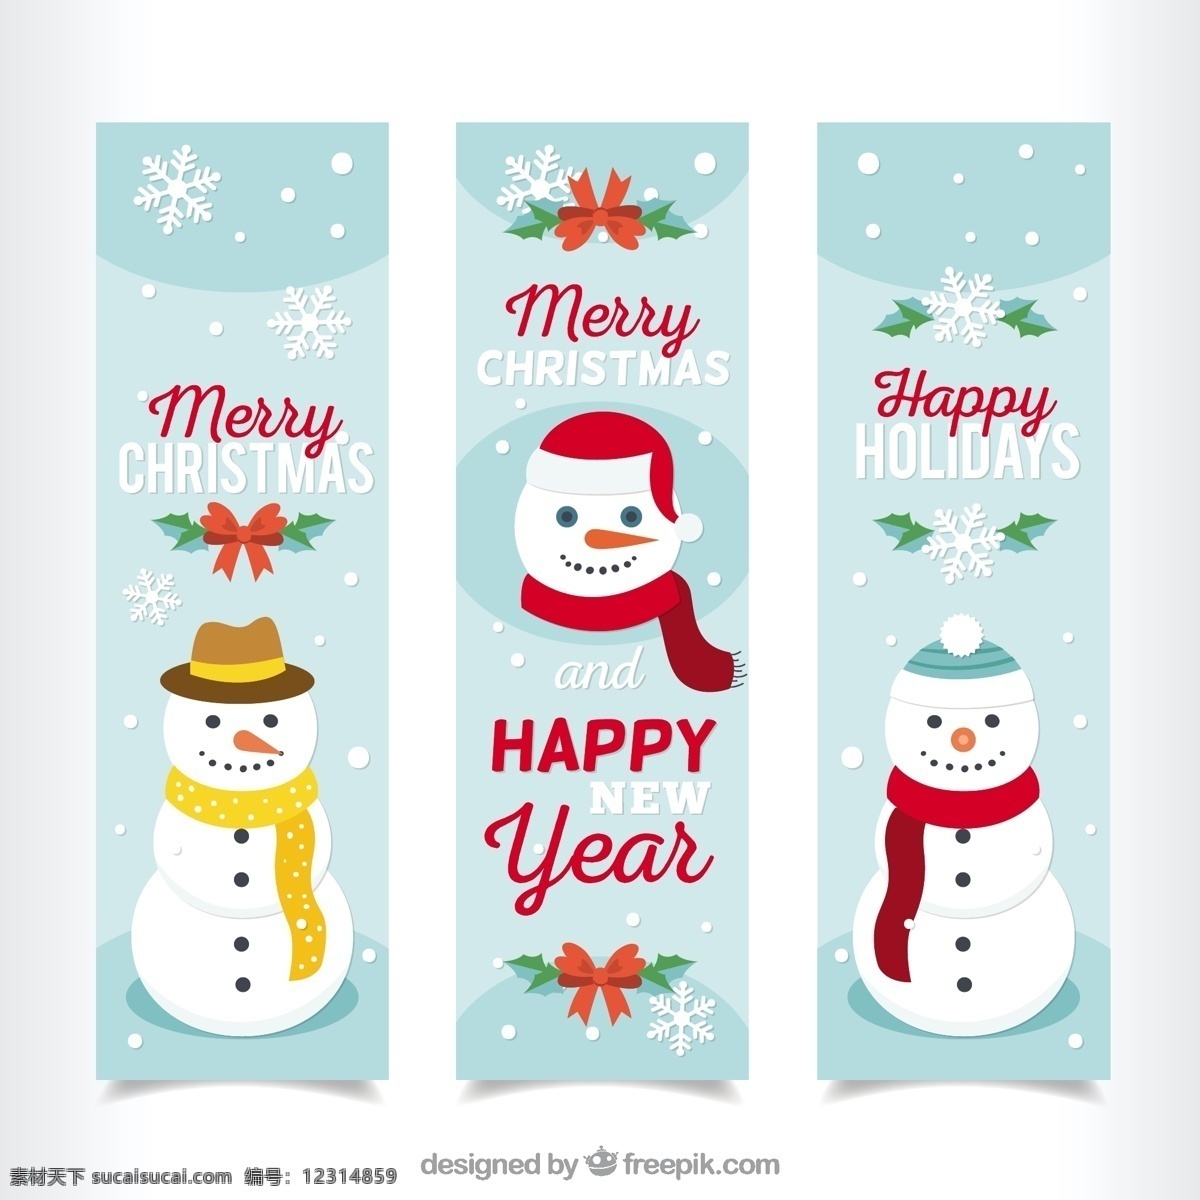 圣诞快乐 横幅 雪人 旗帜 圣诞节 下雪了 冬天 快乐 庆祝的节日 堆雪人 节日快乐 季节 节日 十二月 雪 白色